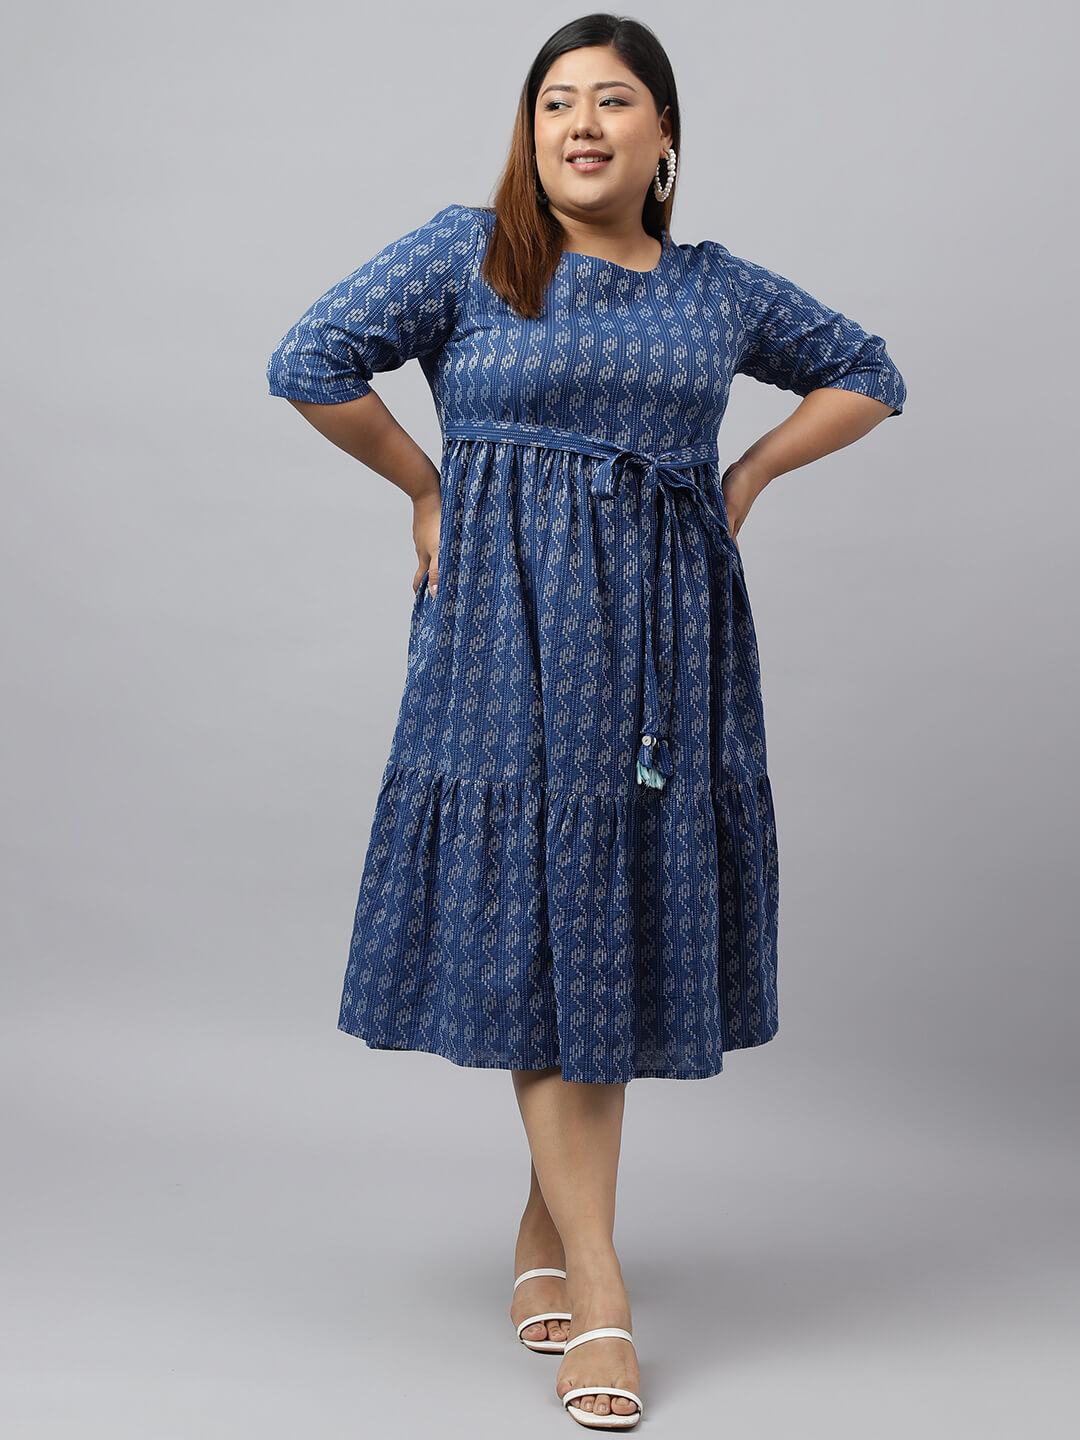 Women's Blue Cotton Woven Design Flared Dress